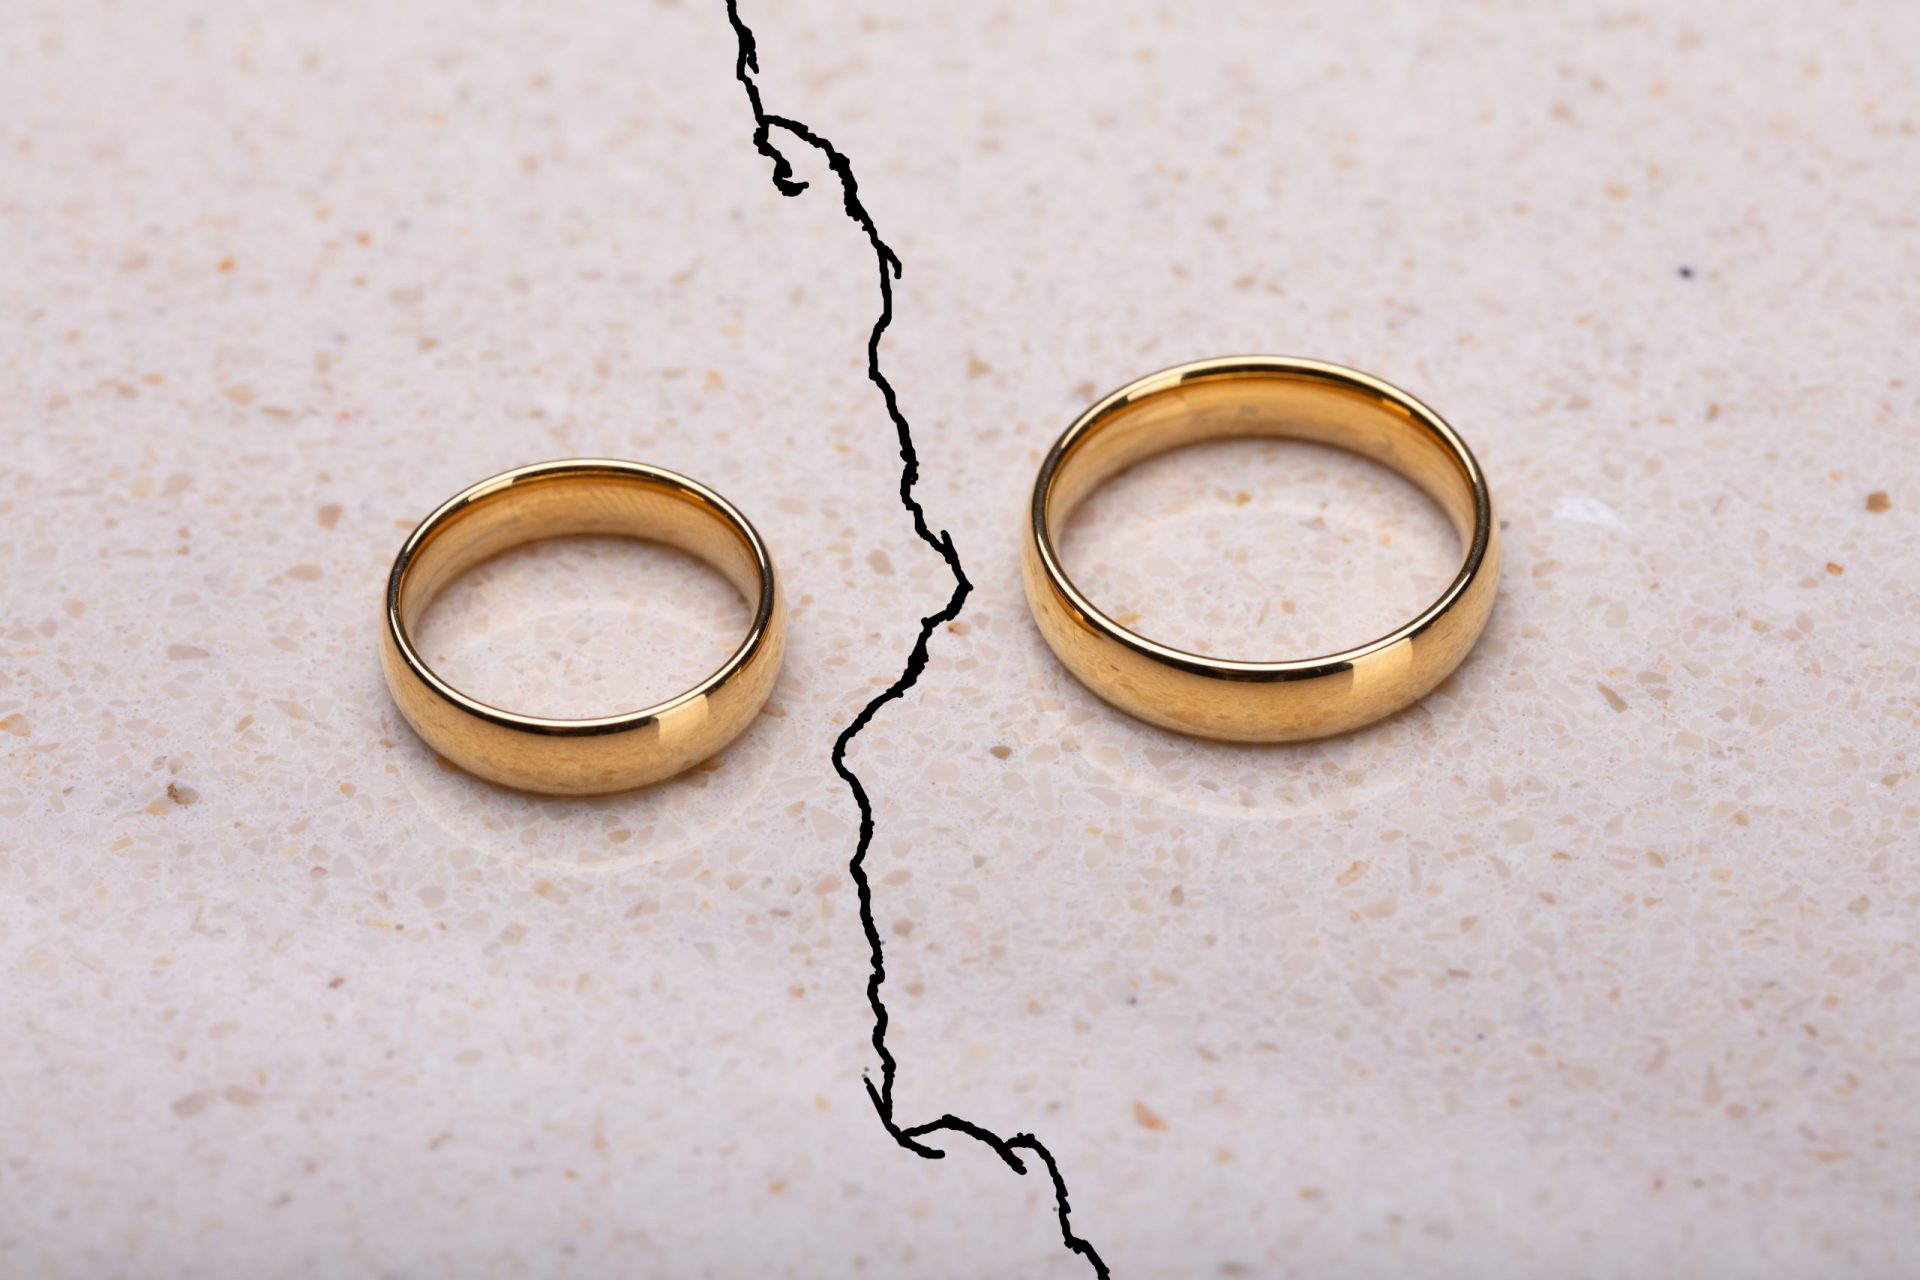 У как у кольца нет конца. Развод кольца. Сломанное обручальное кольцо. Два сломанных кольца. Обручальные кольца развод.